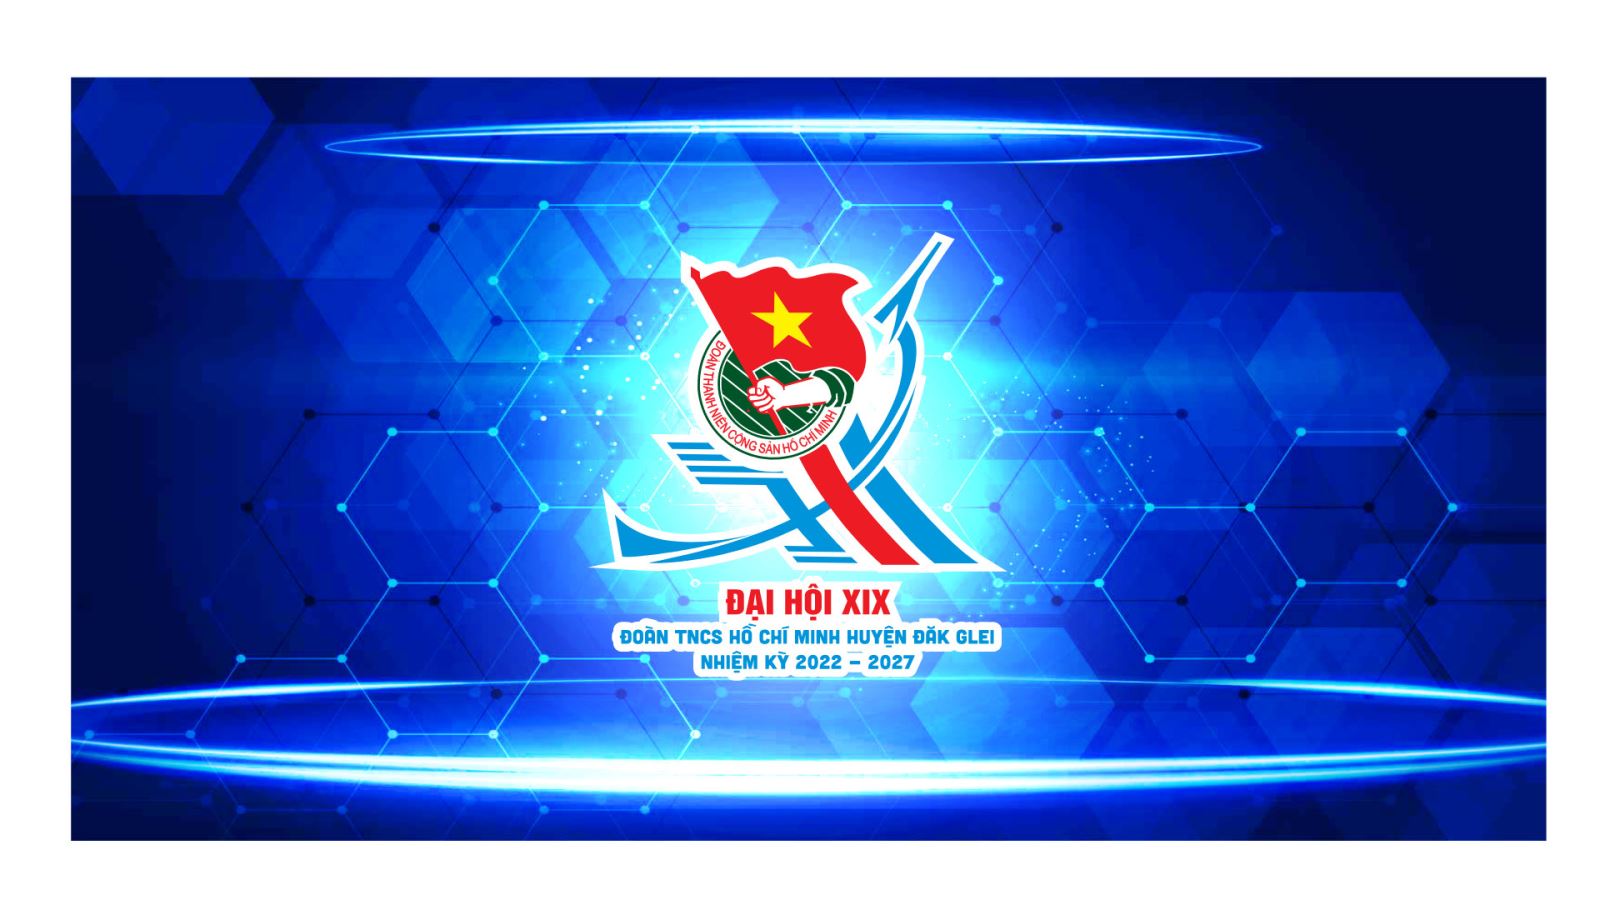 Đại hội XIX Đoàn TNCS Hồ Chí Minh huyện Đăk Glei nhiệm kỳ 2022-2027 diễn ra từ ngày 03/8 đến 04/8/2022